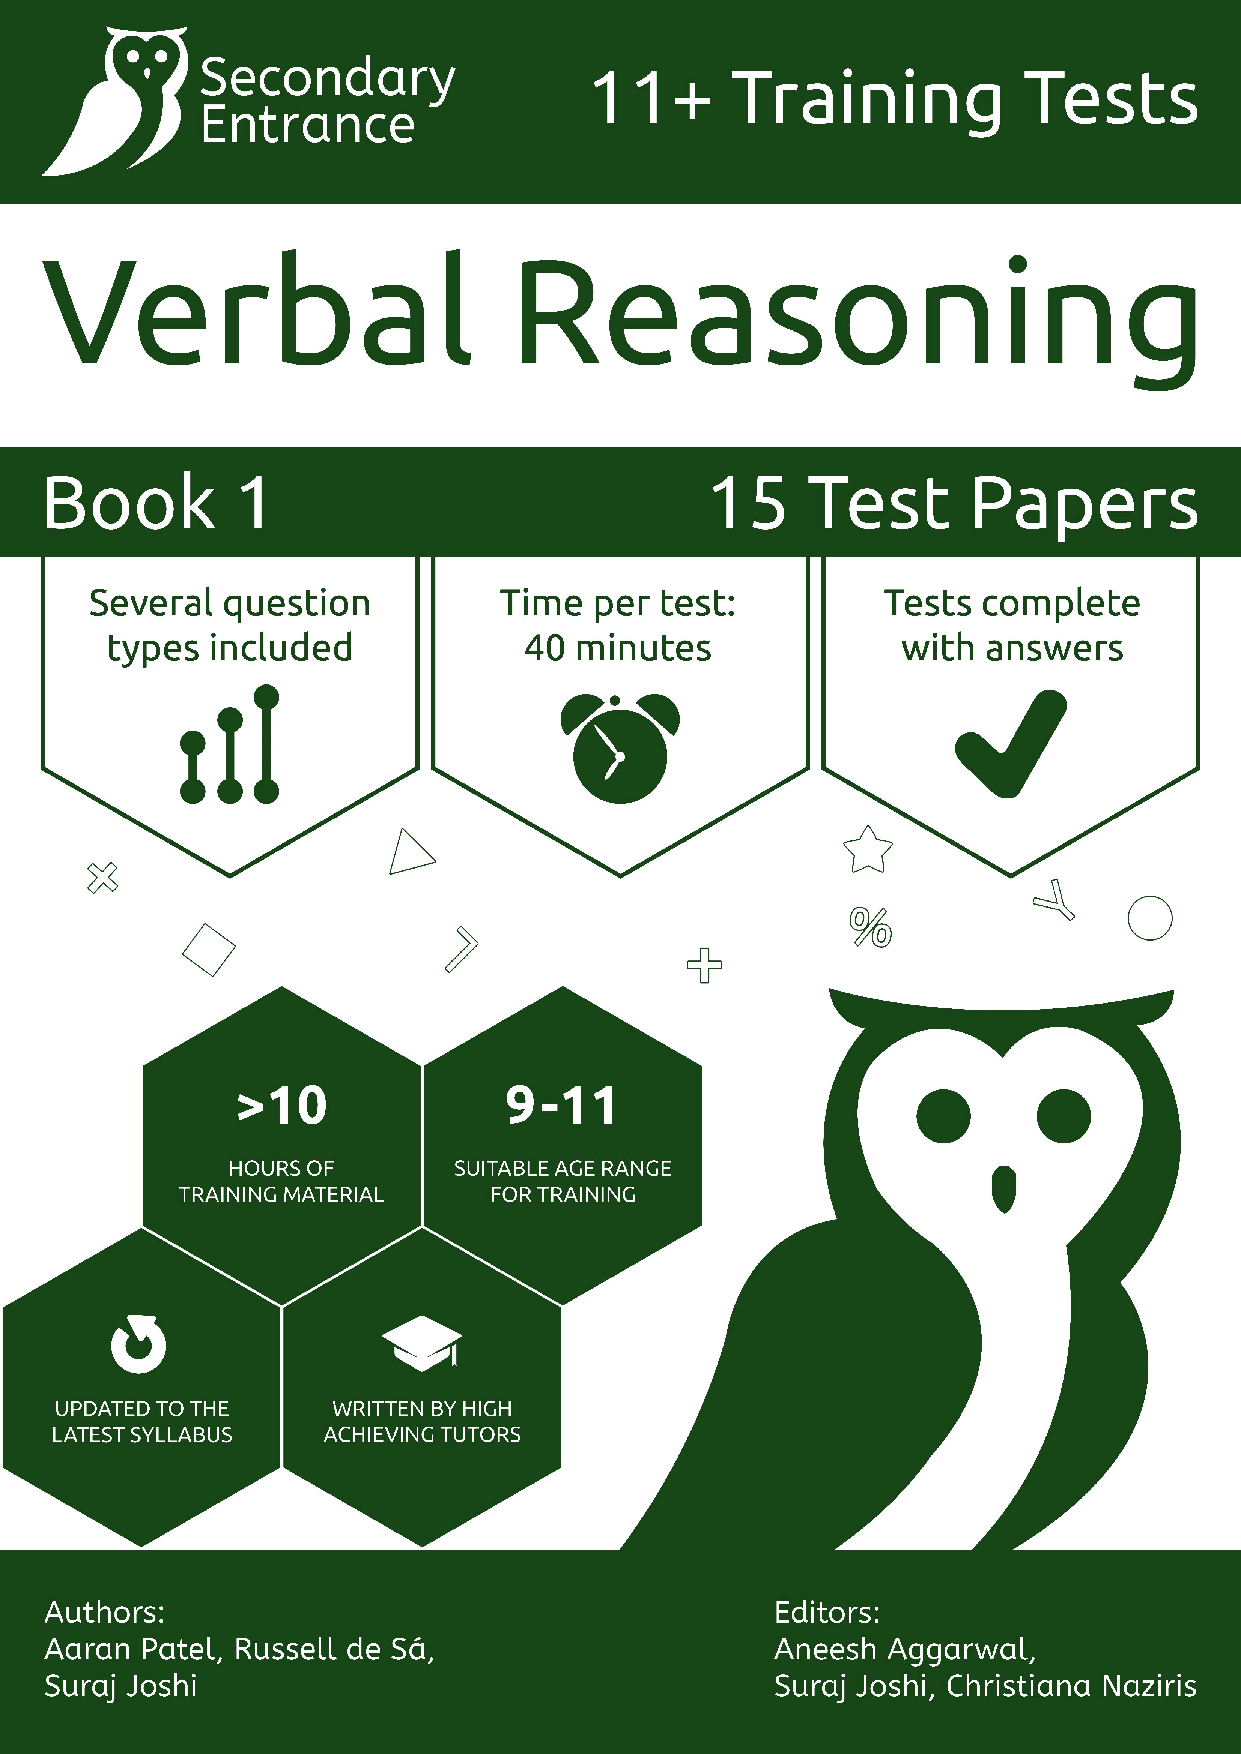 11+ Verbal Reasoning syllabus